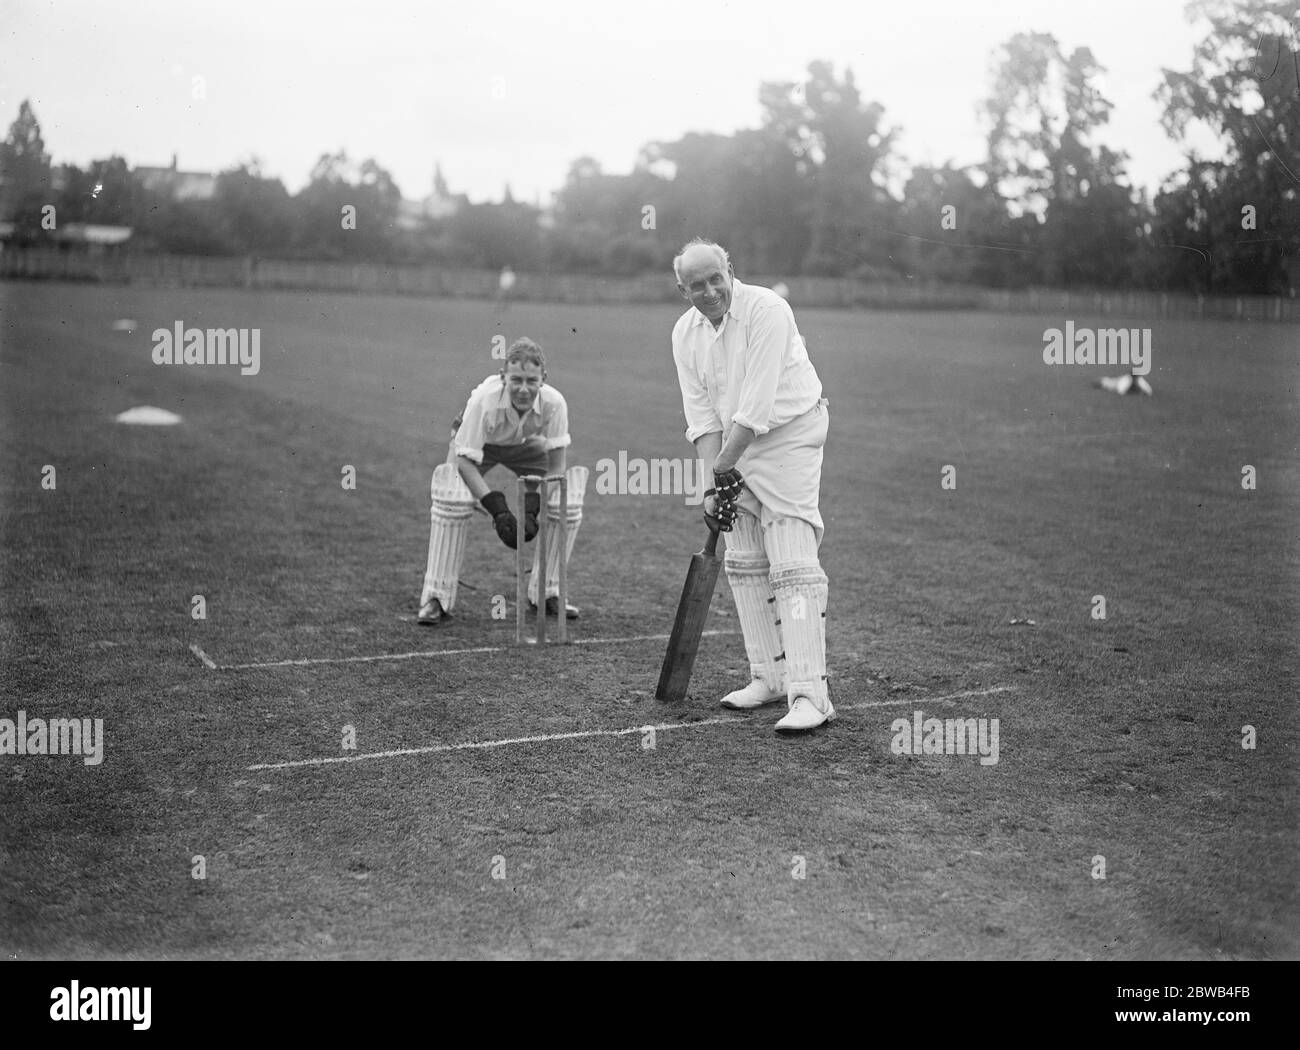 De nombreuses célébrités au cricket de nombreux joueurs célèbres ont participé à un match de cricket joué au Rev L D Ford , le chef-maître de Harrow qui a fait un bon score, dont un coup à six batting 8 juillet 1922 Banque D'Images